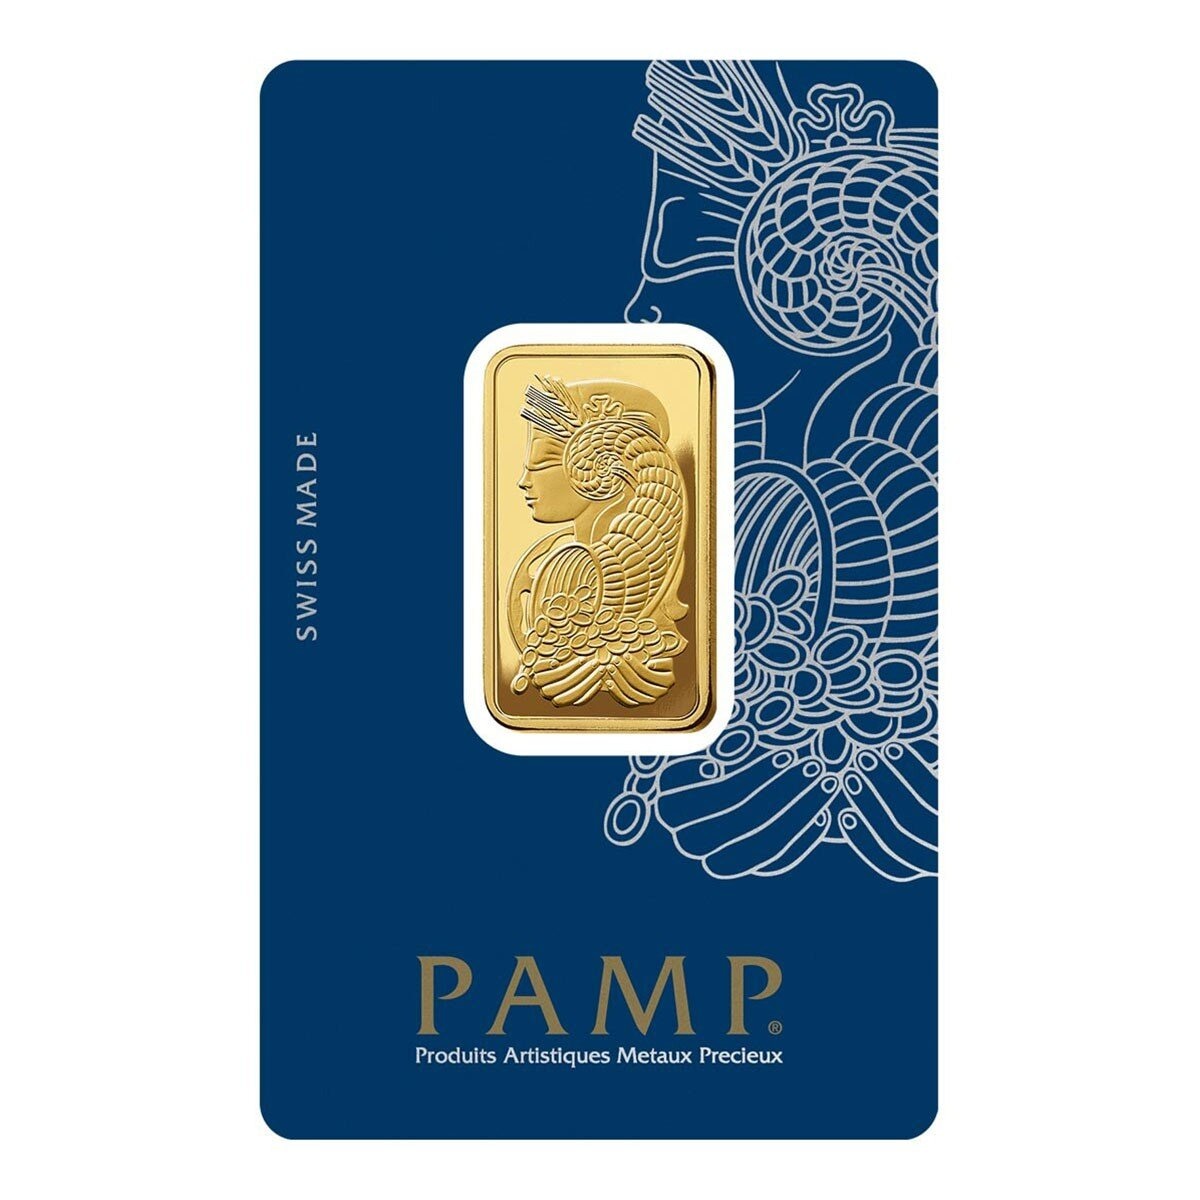 PAMP 財富女神黃金條塊 999.9純金 20公克